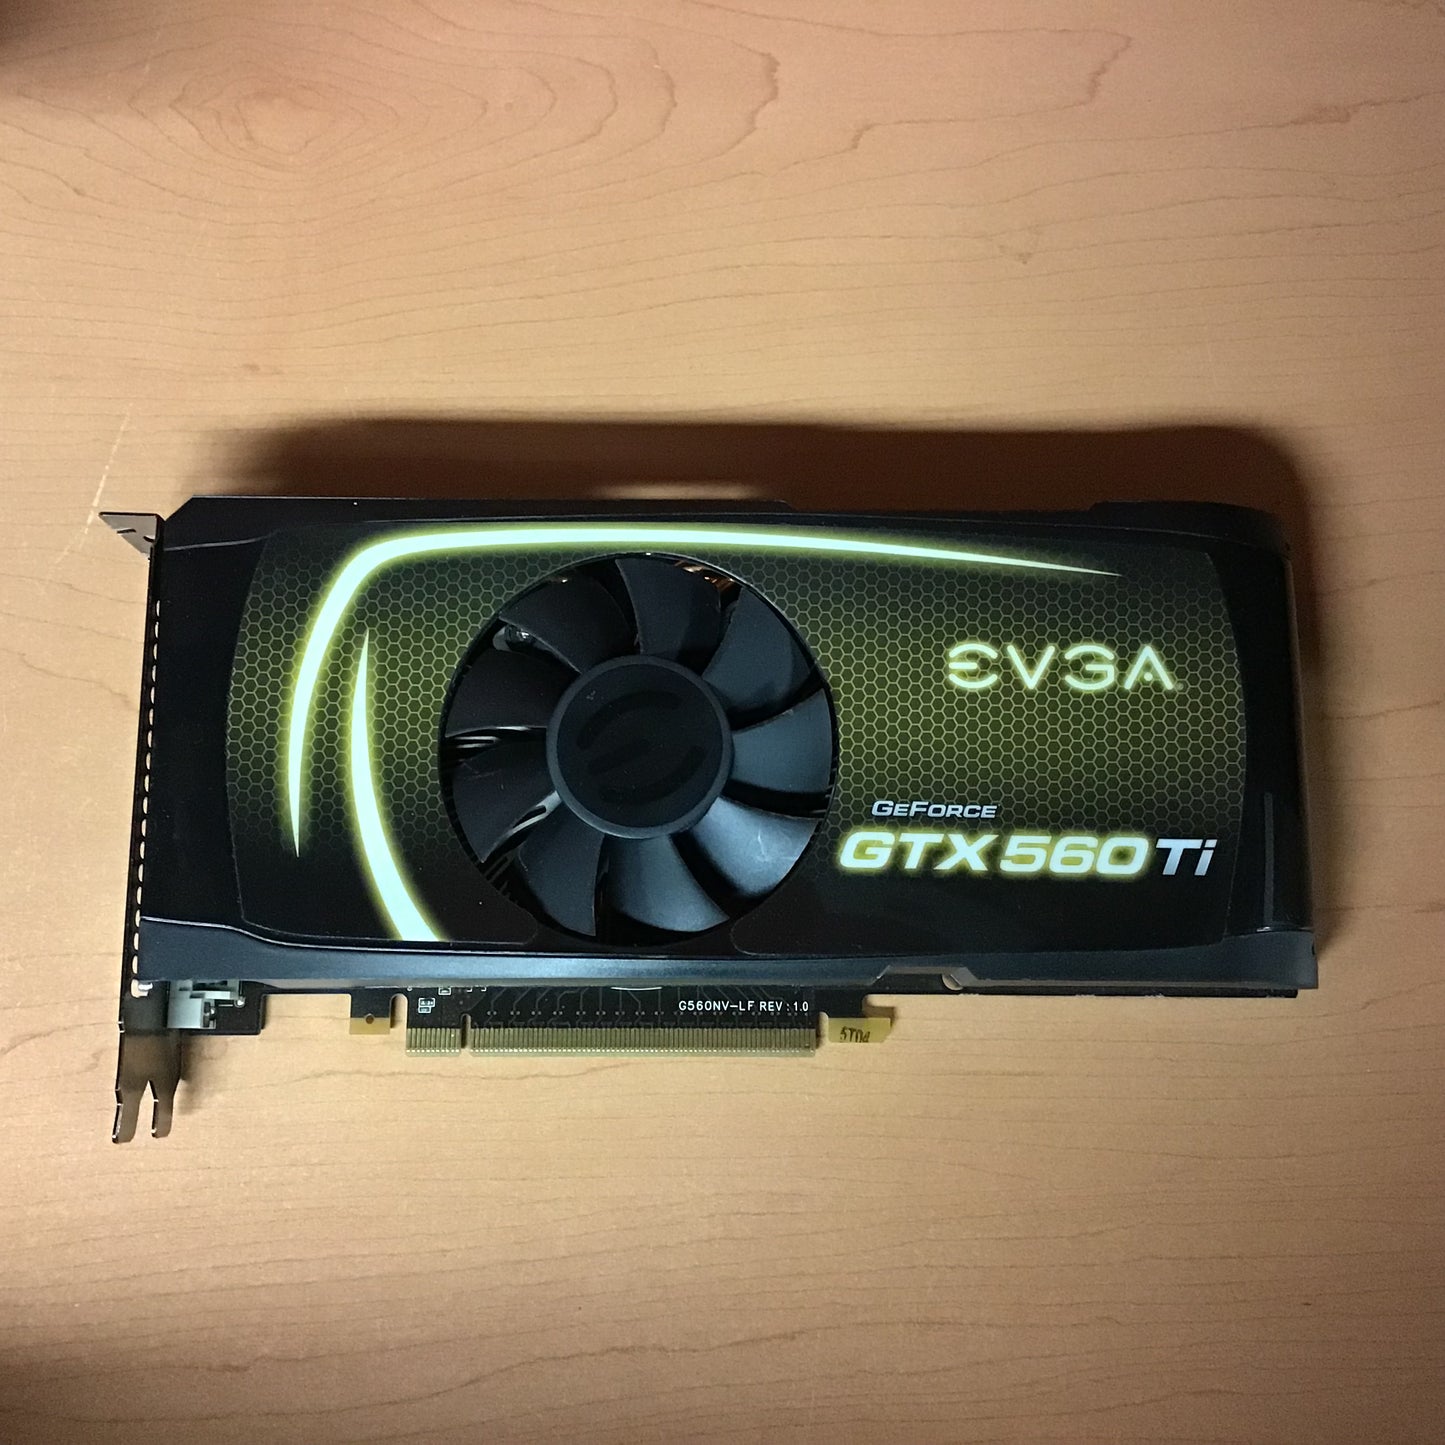 EVGA GeForce GTX 560 Ti 1GB